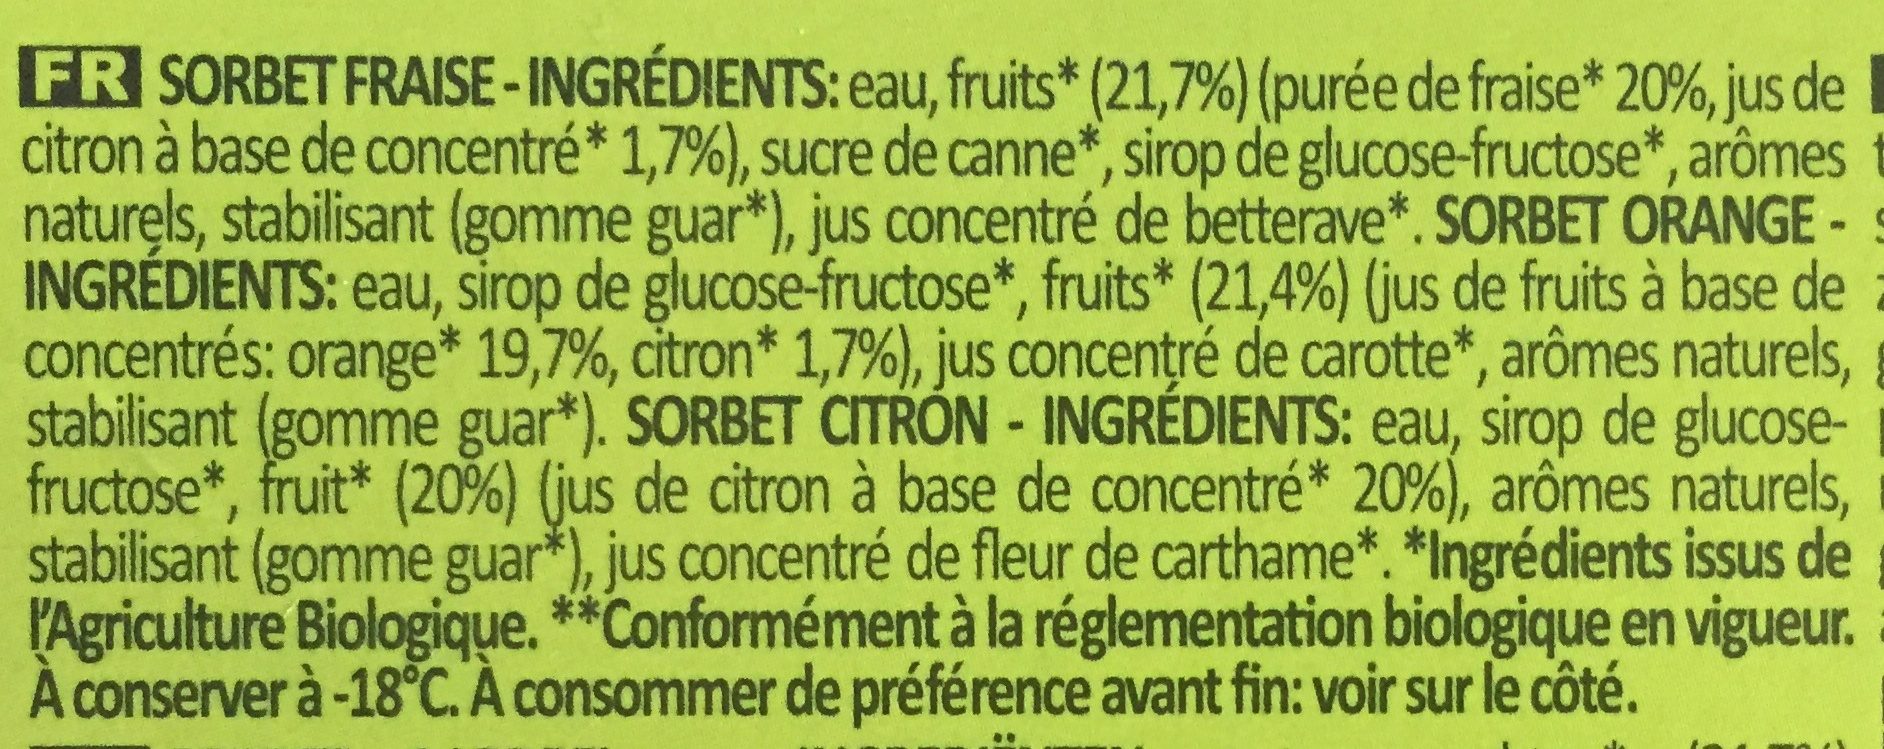 Sorbet bio - Ingredients - fr